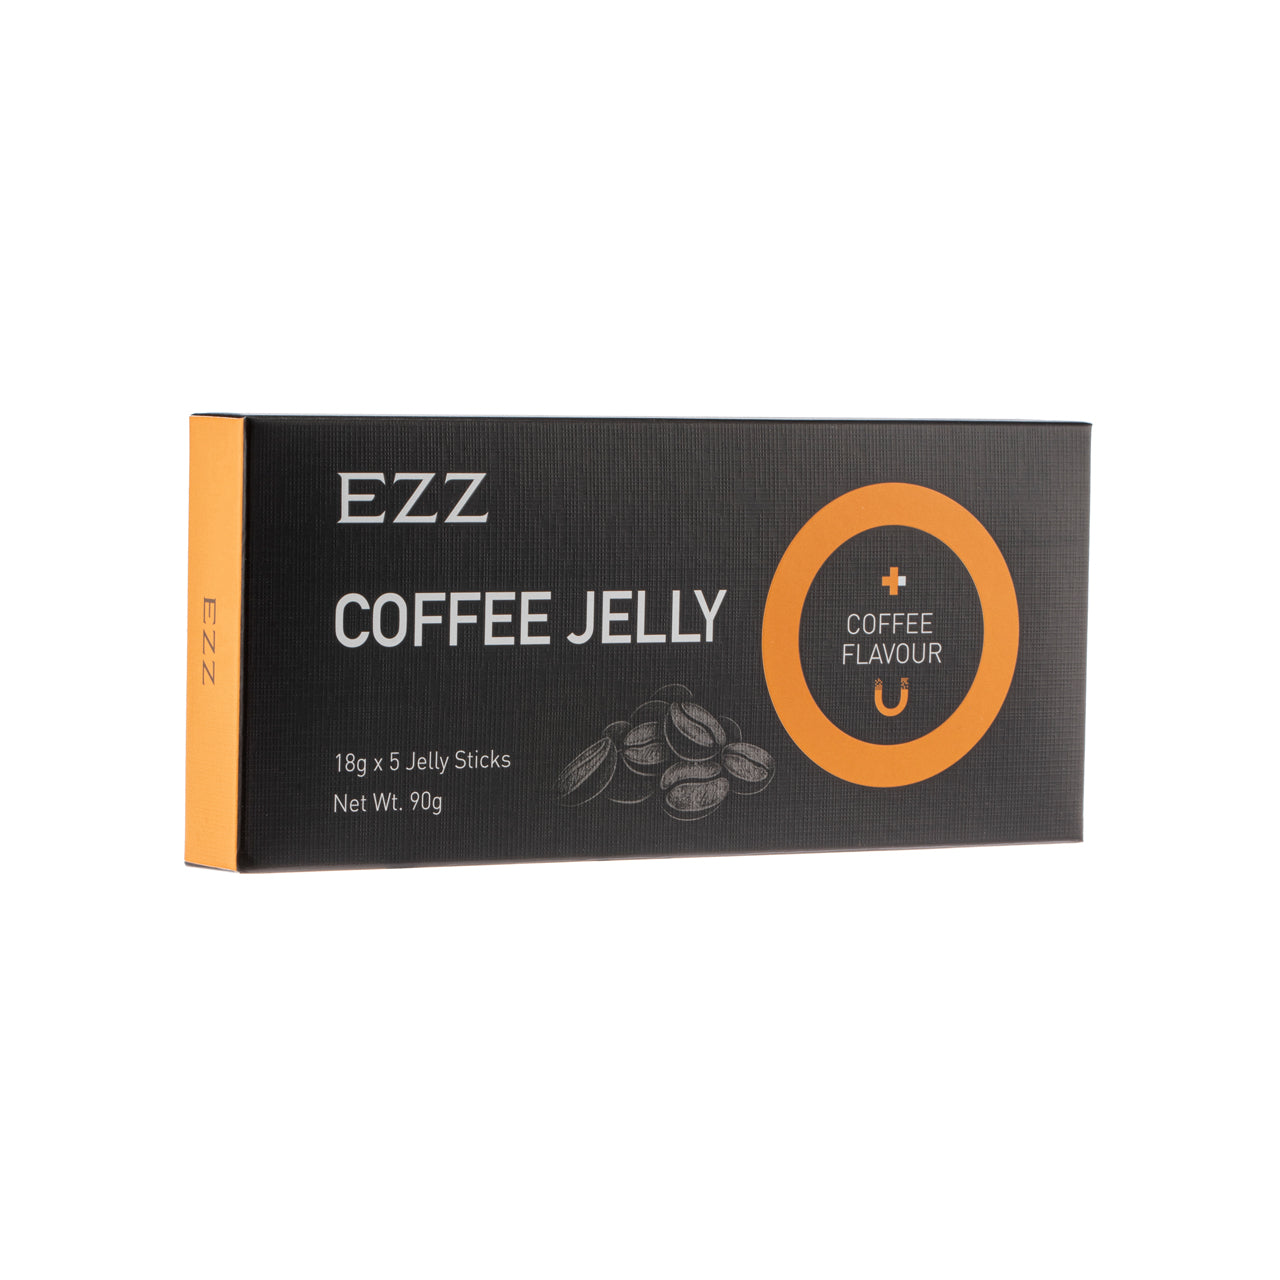 Ezz Coffee Jelly